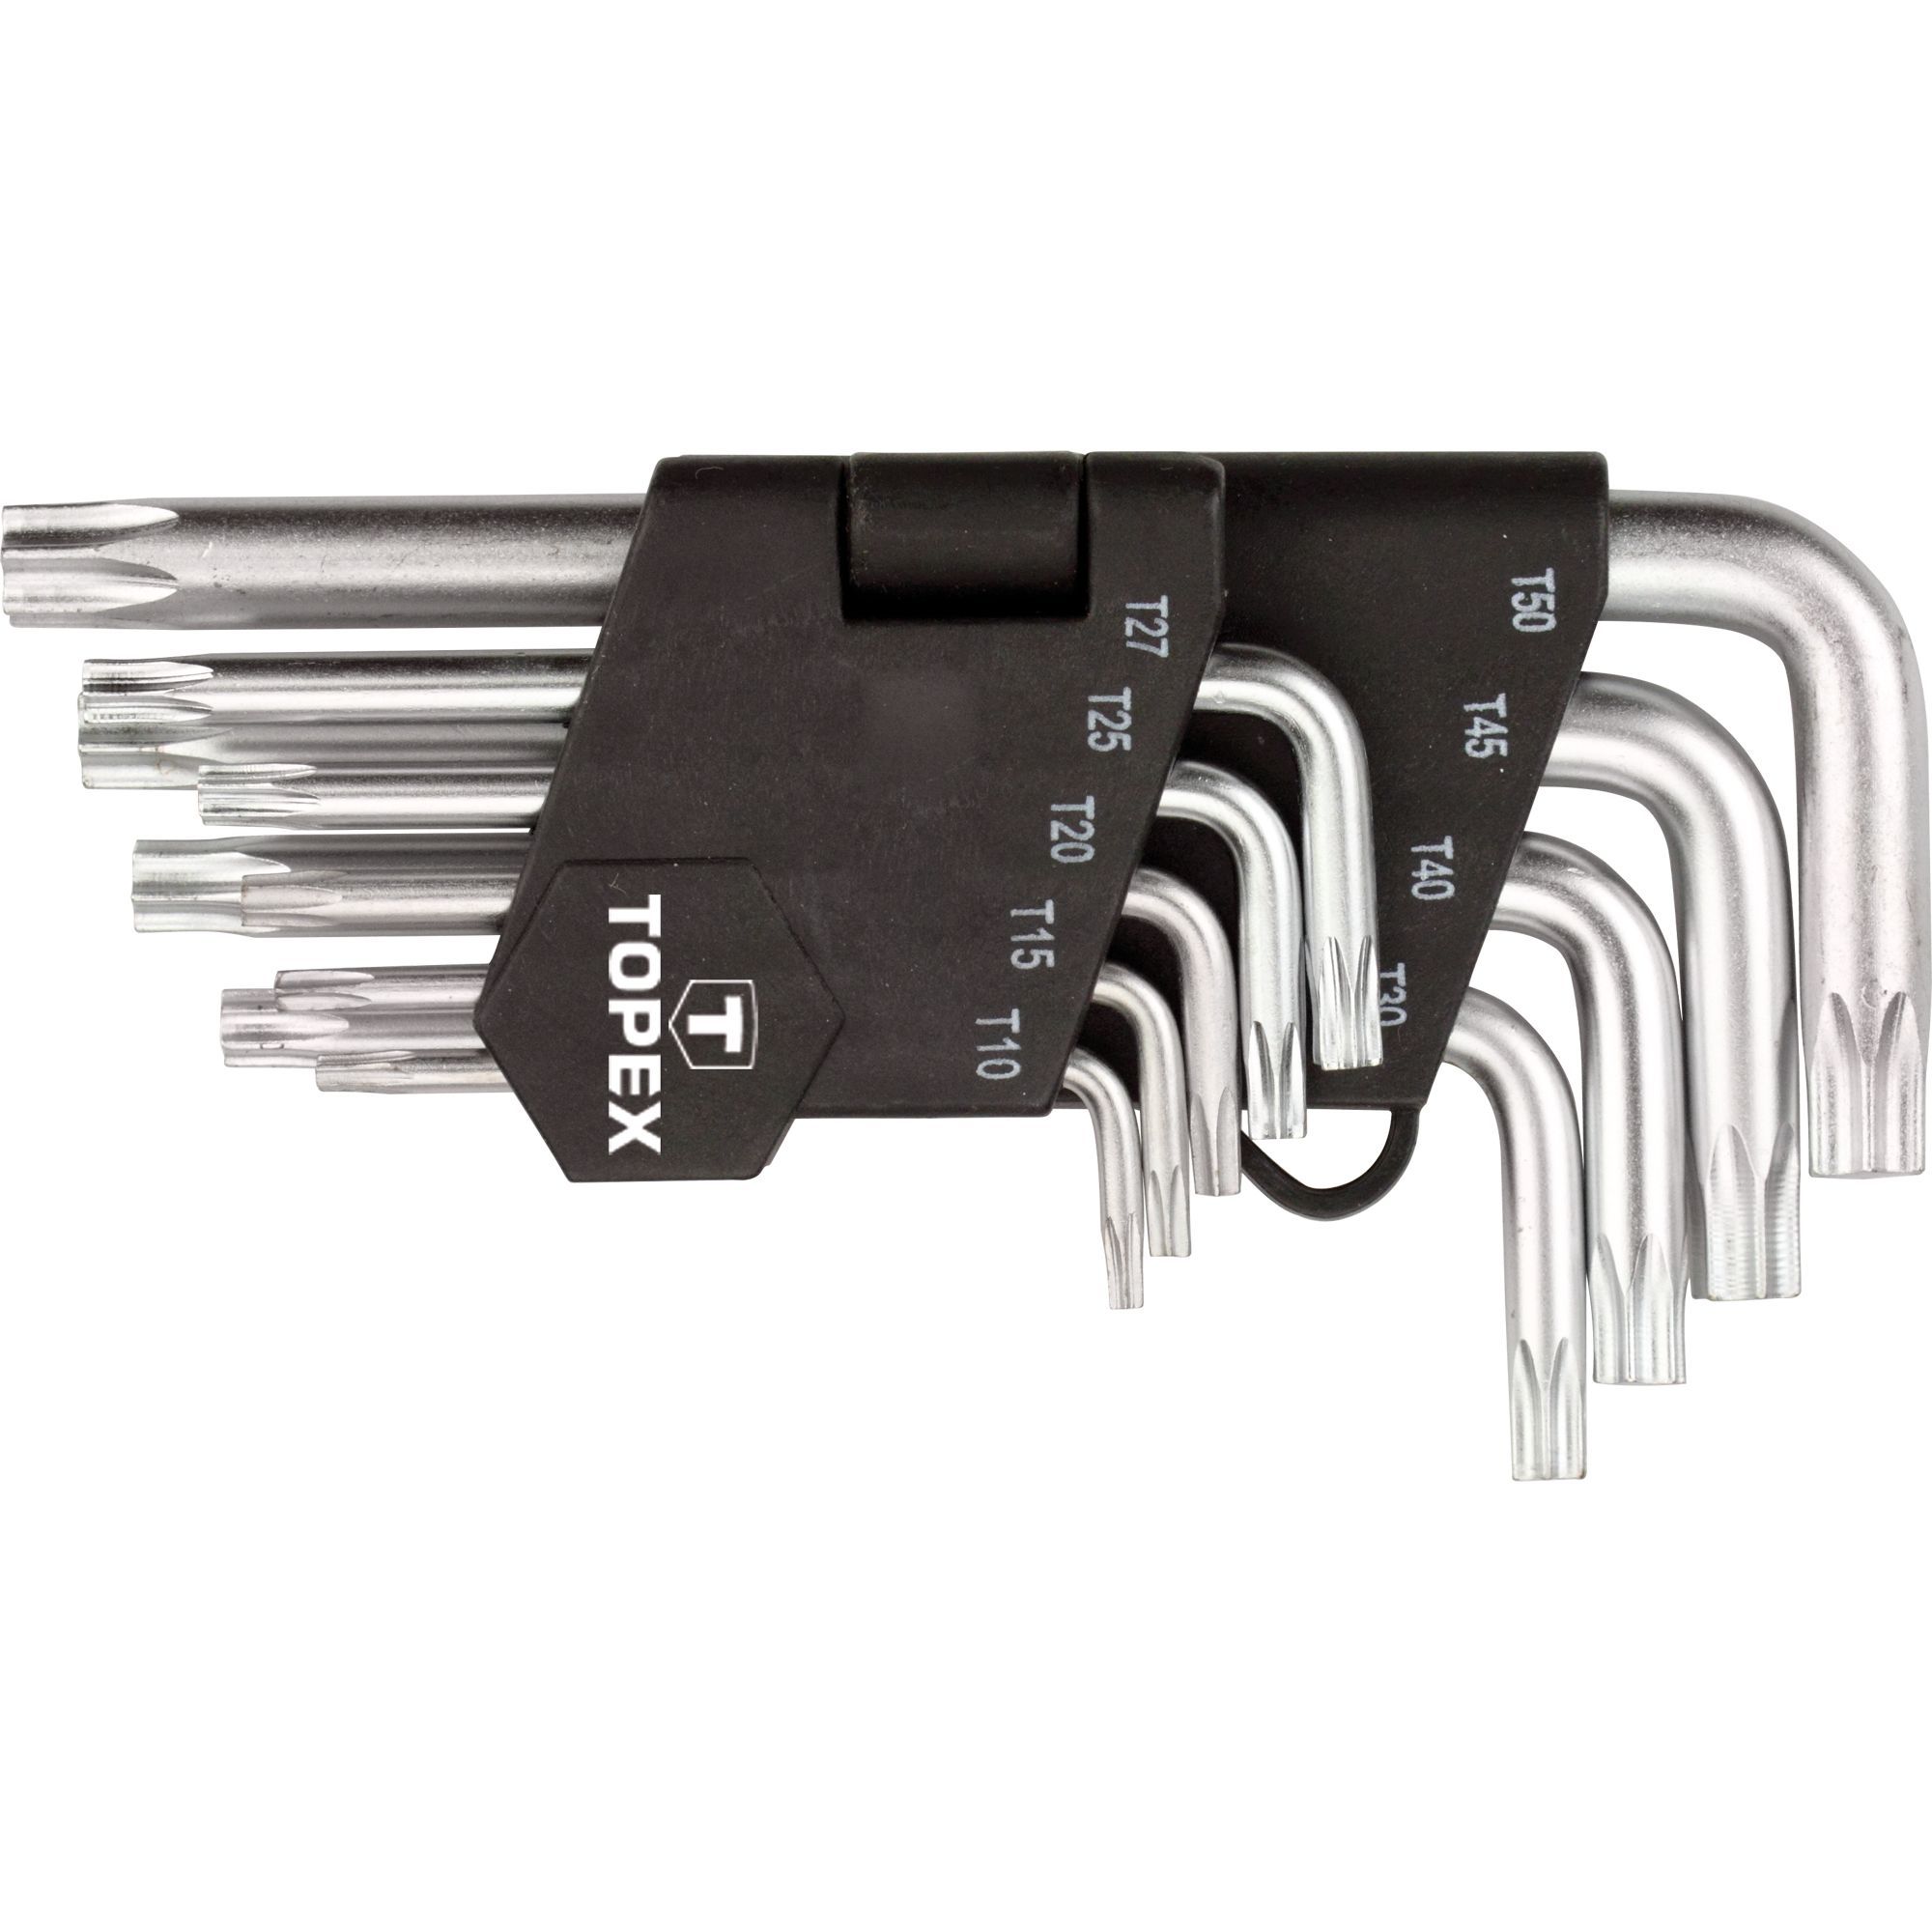 Ключі Topex Torx набір 9 шт. (35D960) - фото 1